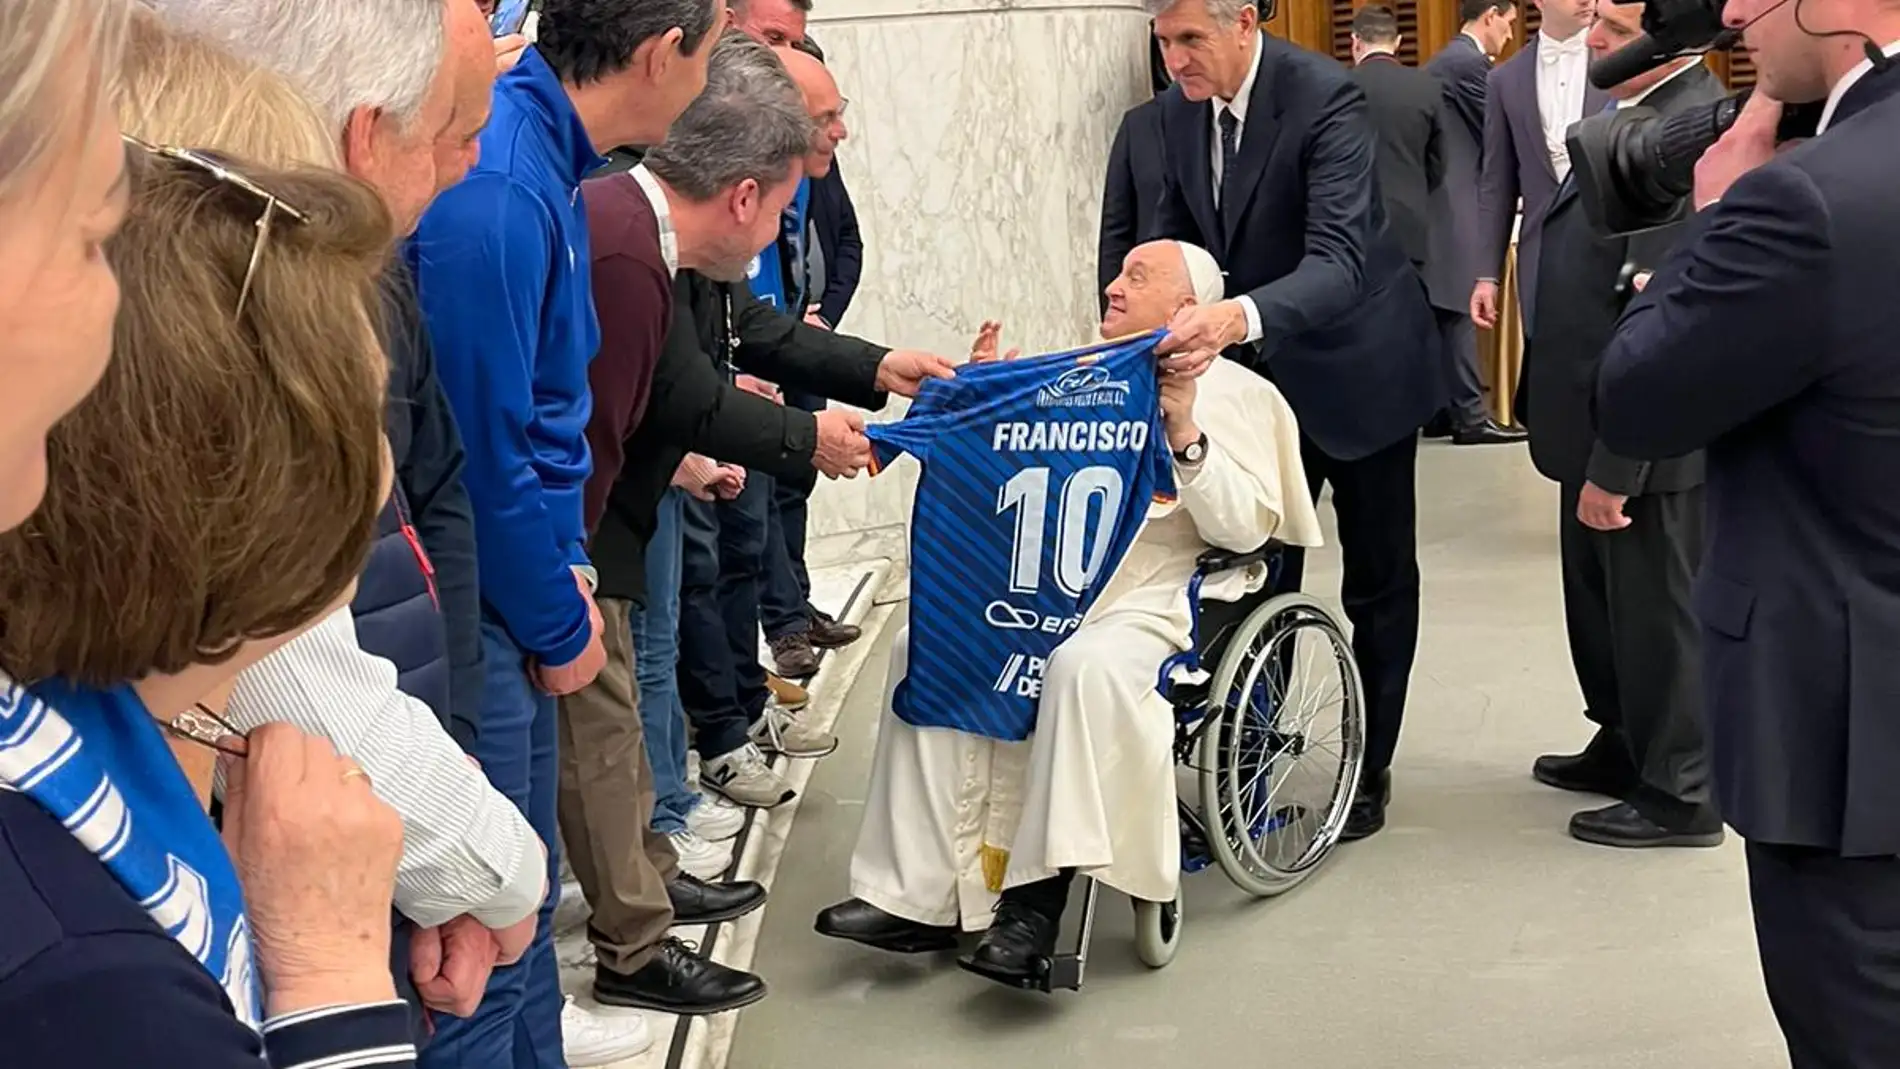 El Papa recibe la camiseta conmemorativa del centenario de la UD Socuéllamos